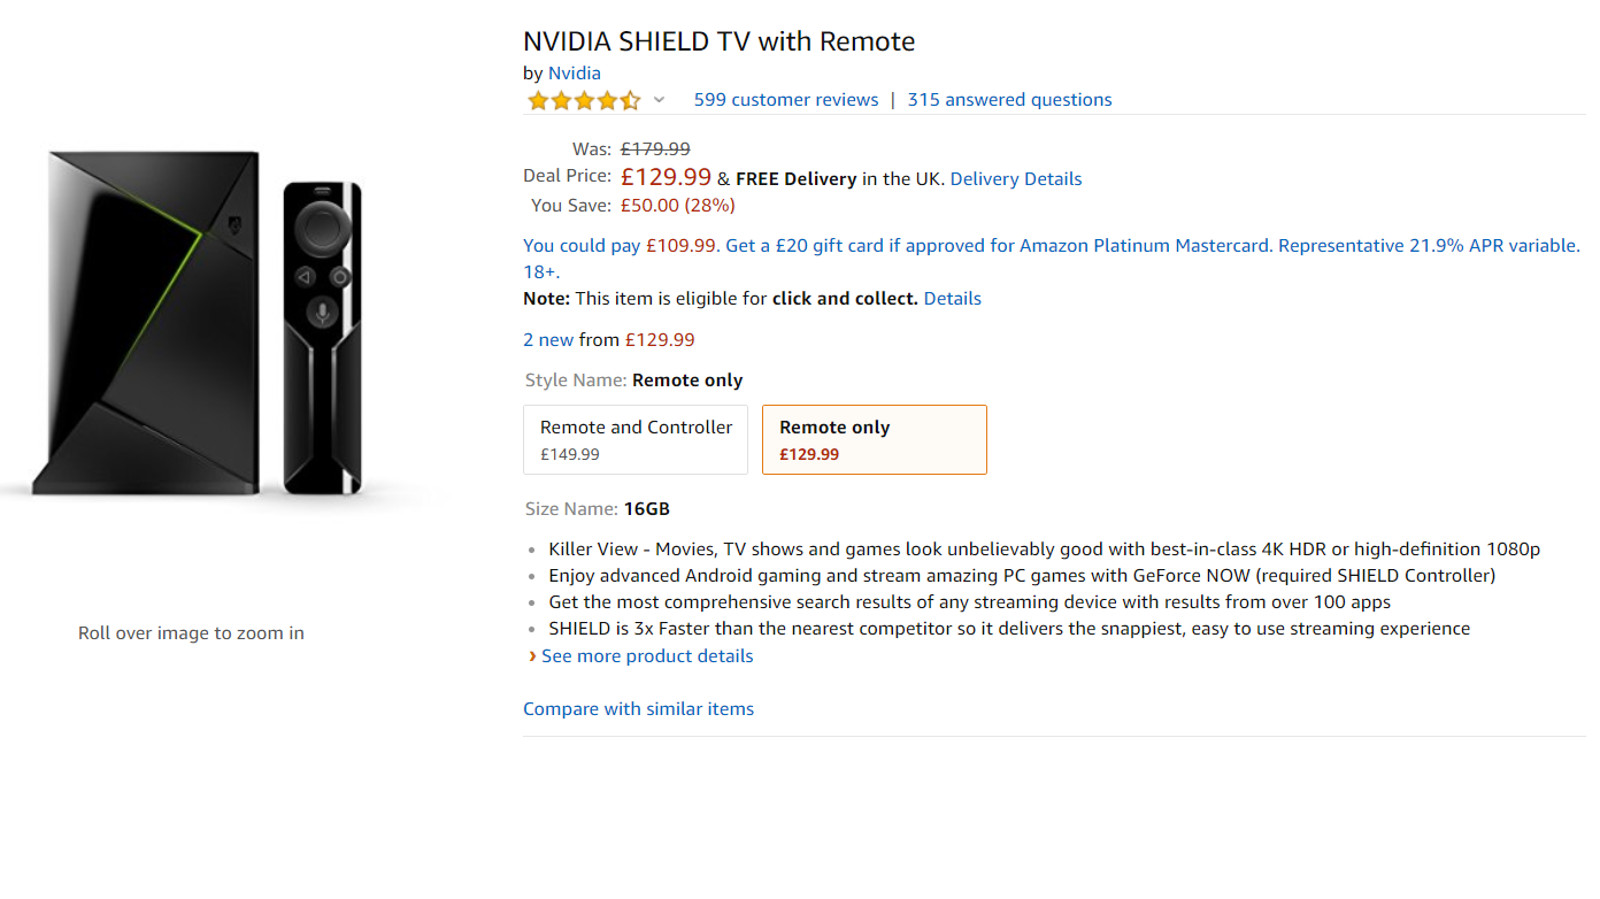 The Nvidia Shield TV from Amazon UK.